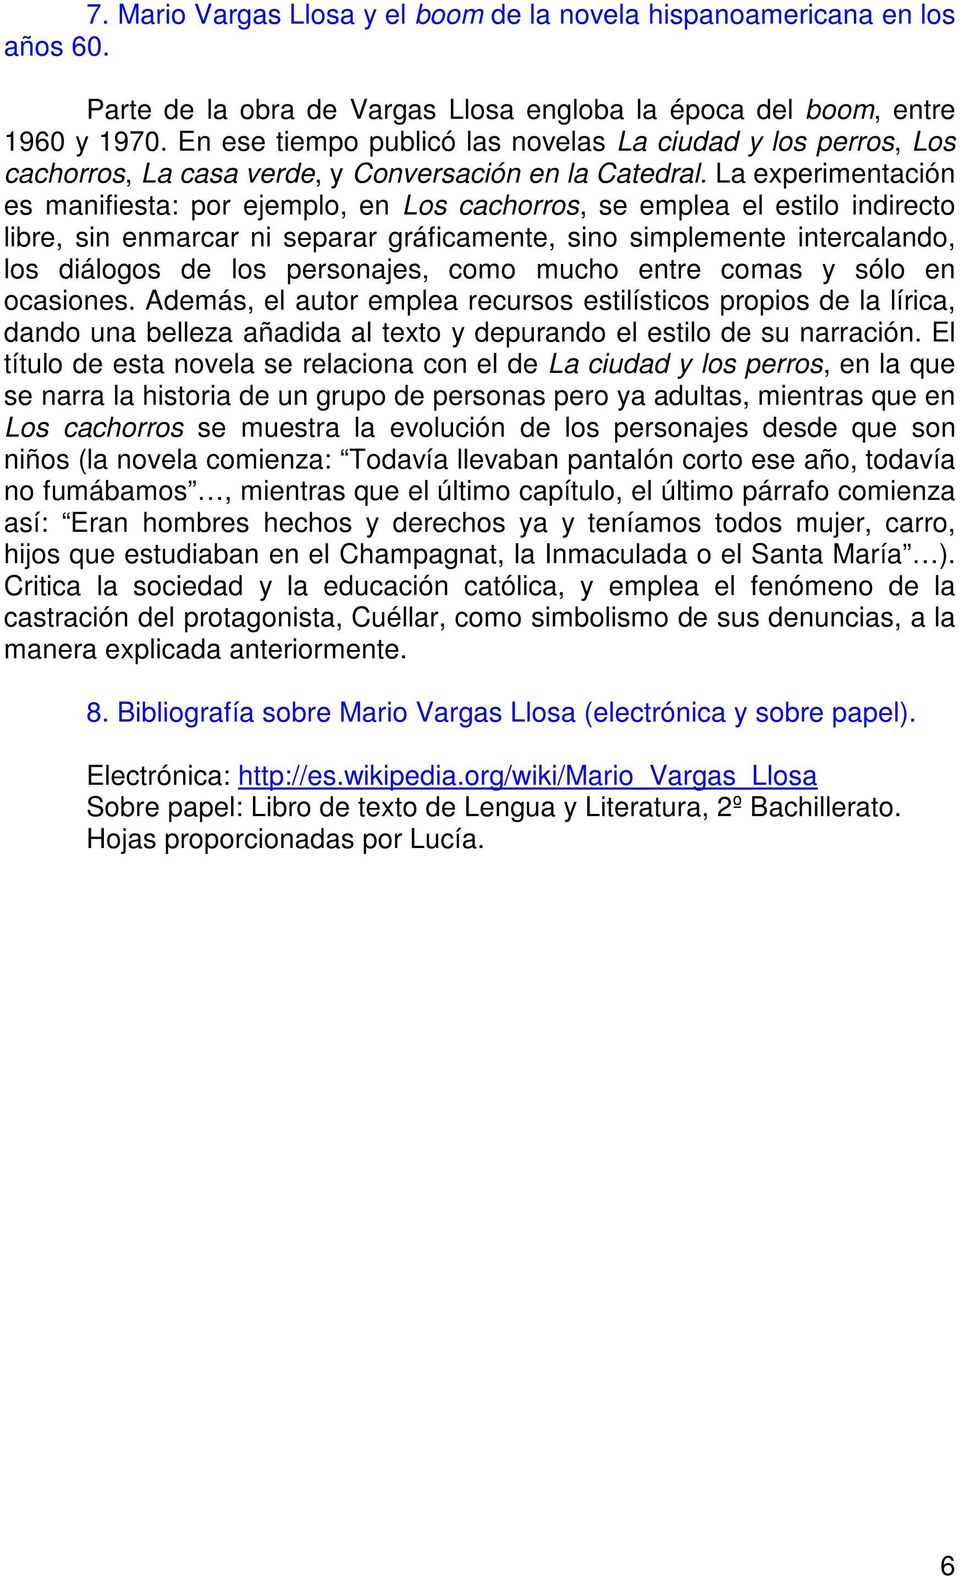 1. Principales de Los cachorros, de M. Vargas Llosa. Sus caracteres y acciones. PDF Free Download